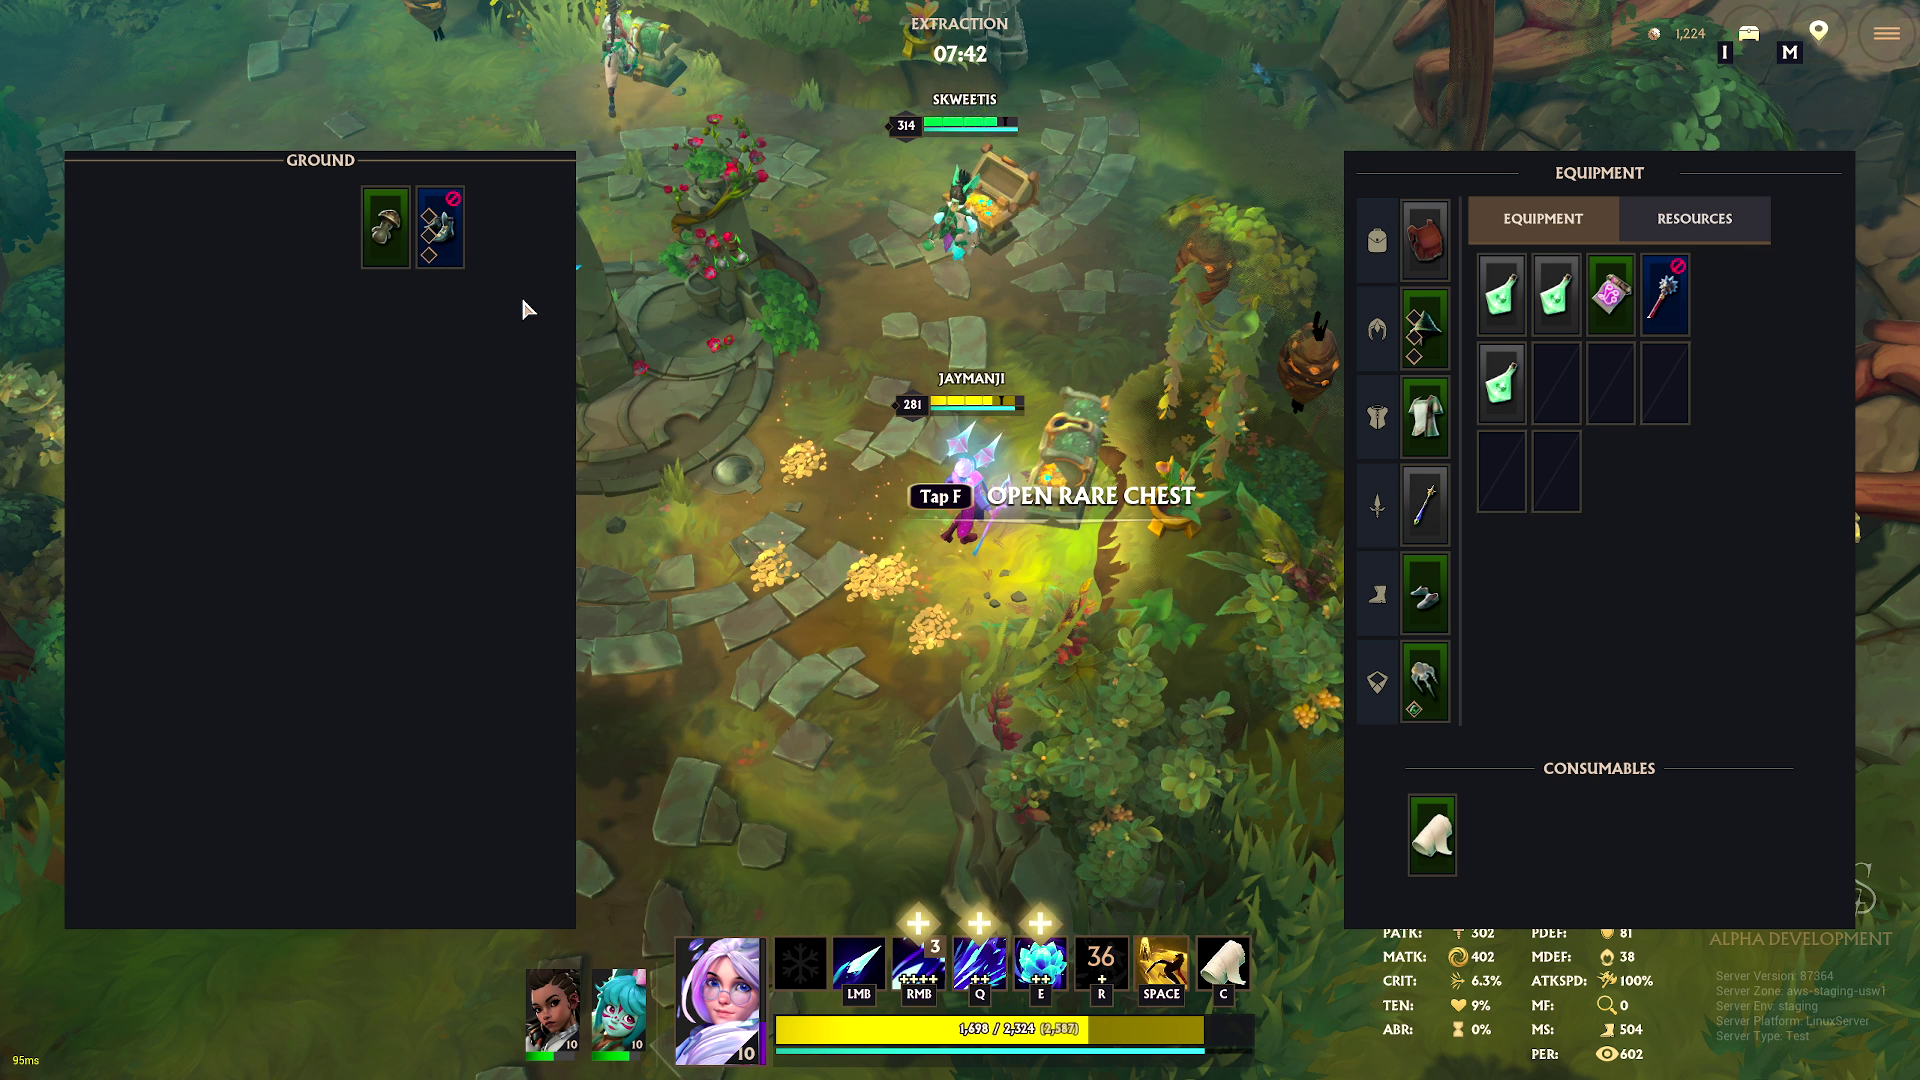 Seekesr of Skyveil gameplay screenshots